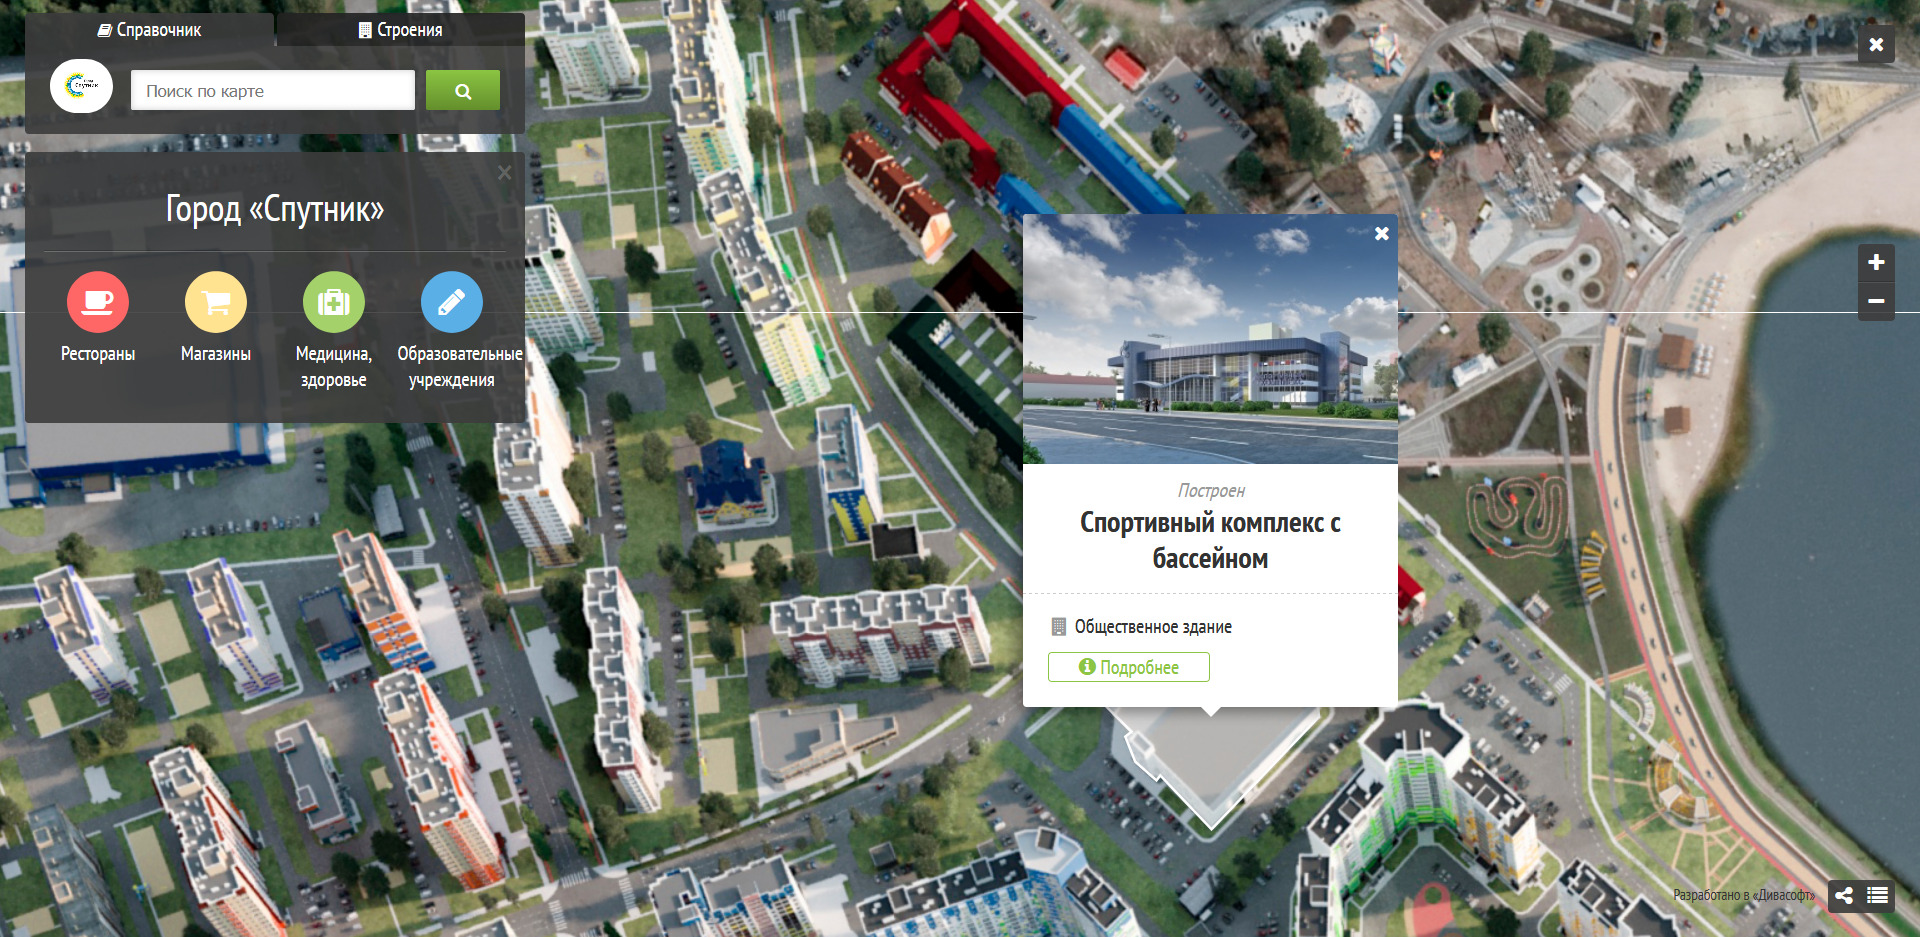 Screenshot_2020-05-19 Город Спутник в Пензе - Интерактивная карта 2 0.jpg